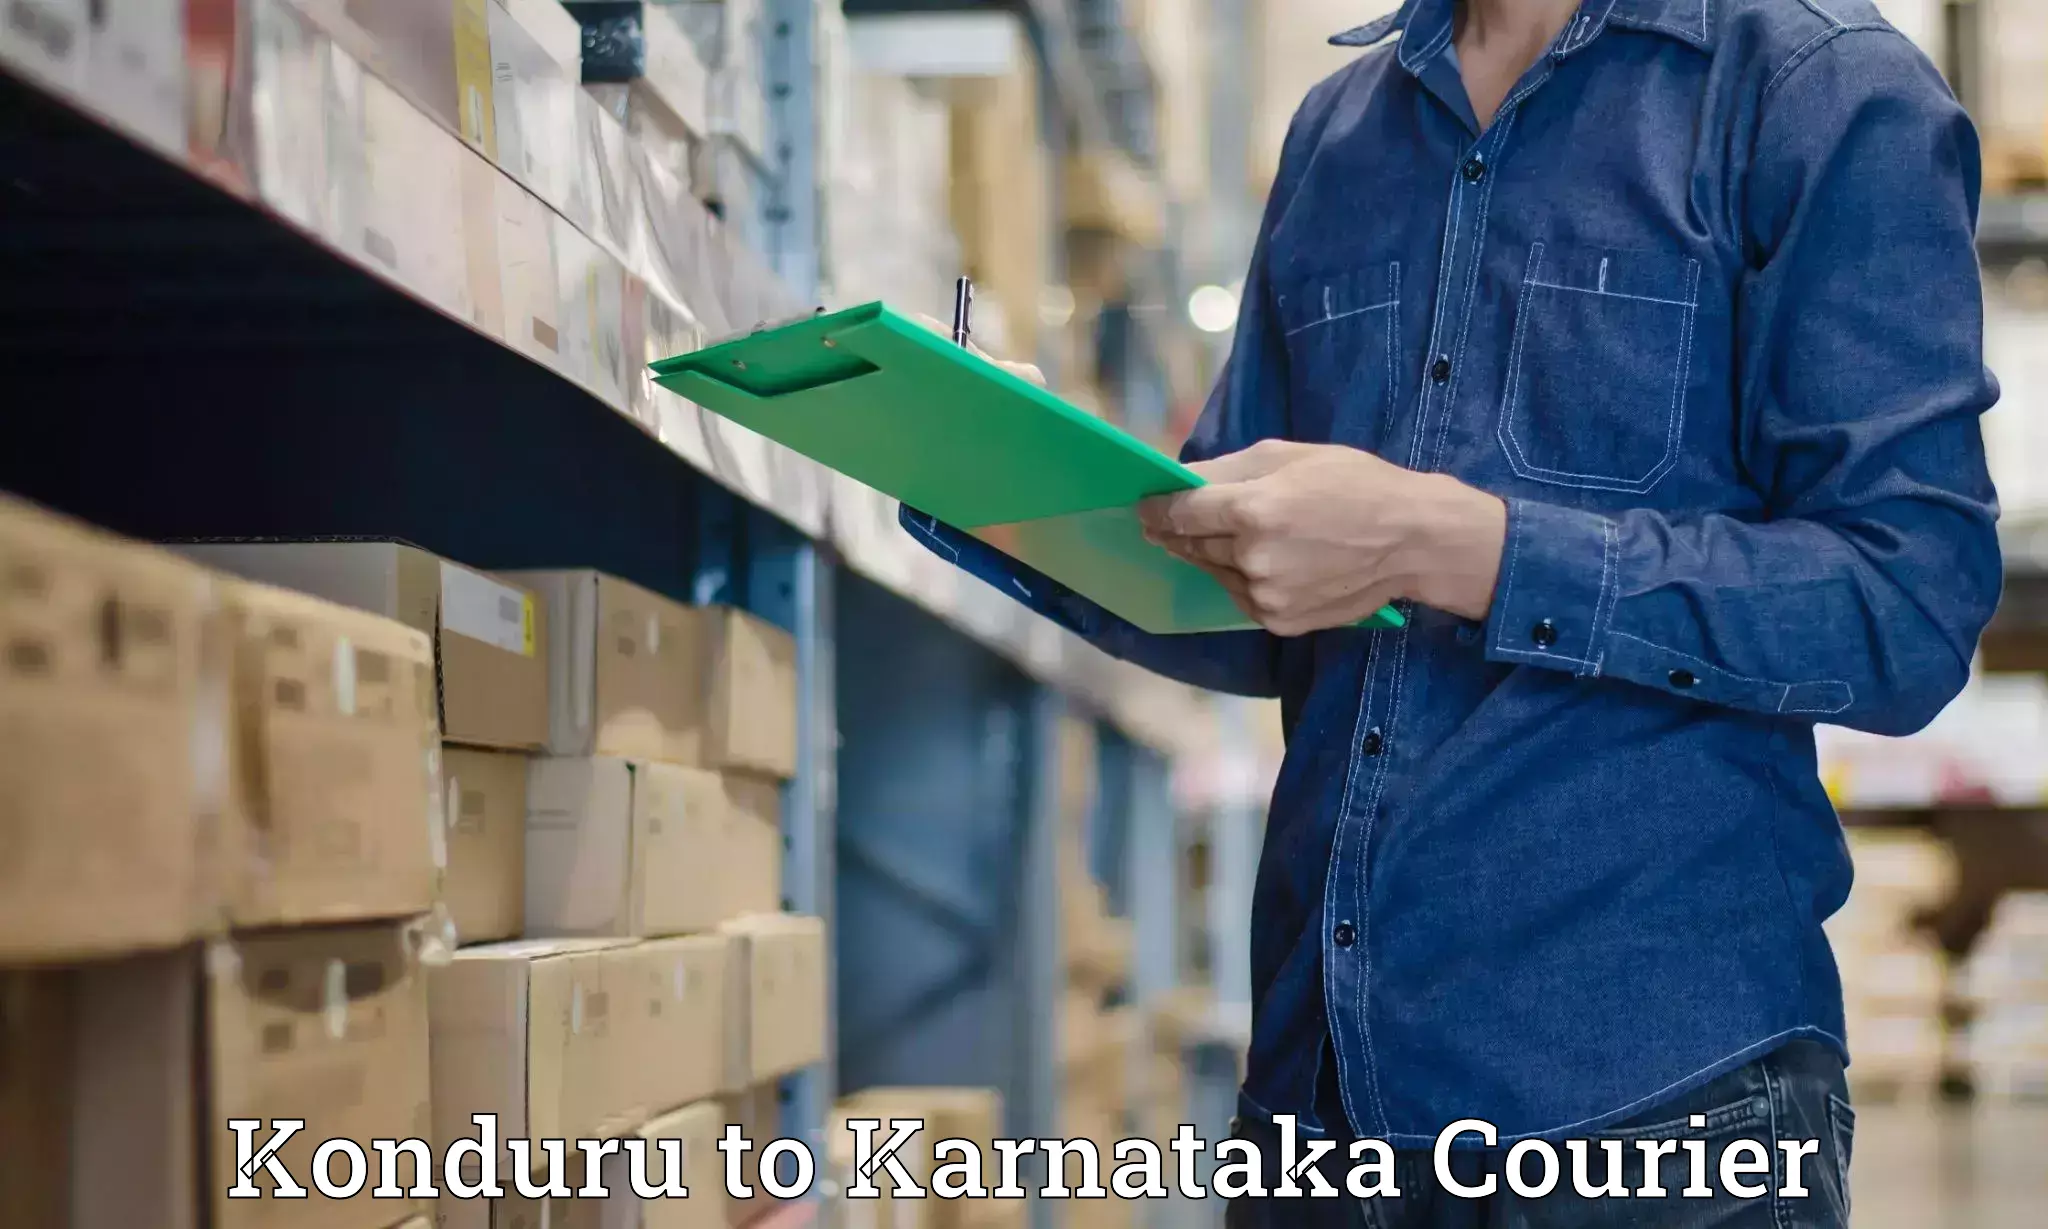 Pharmaceutical courier Konduru to Kanjarakatte